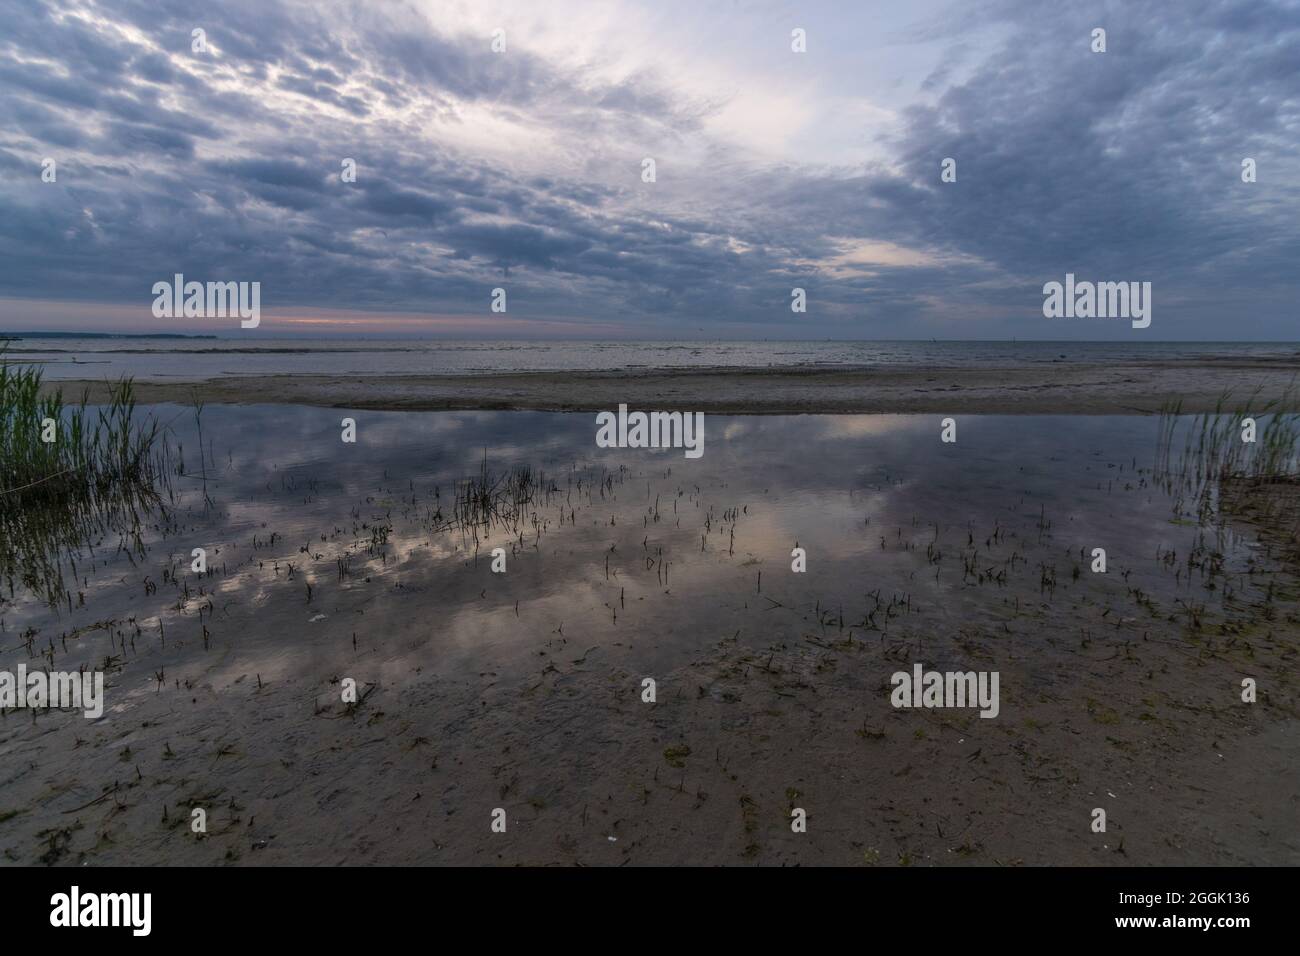 Reflet des nuages et de la lumière dans l'eau de la mer Baltique sur la plage de Stein, Allemagne. Banque D'Images